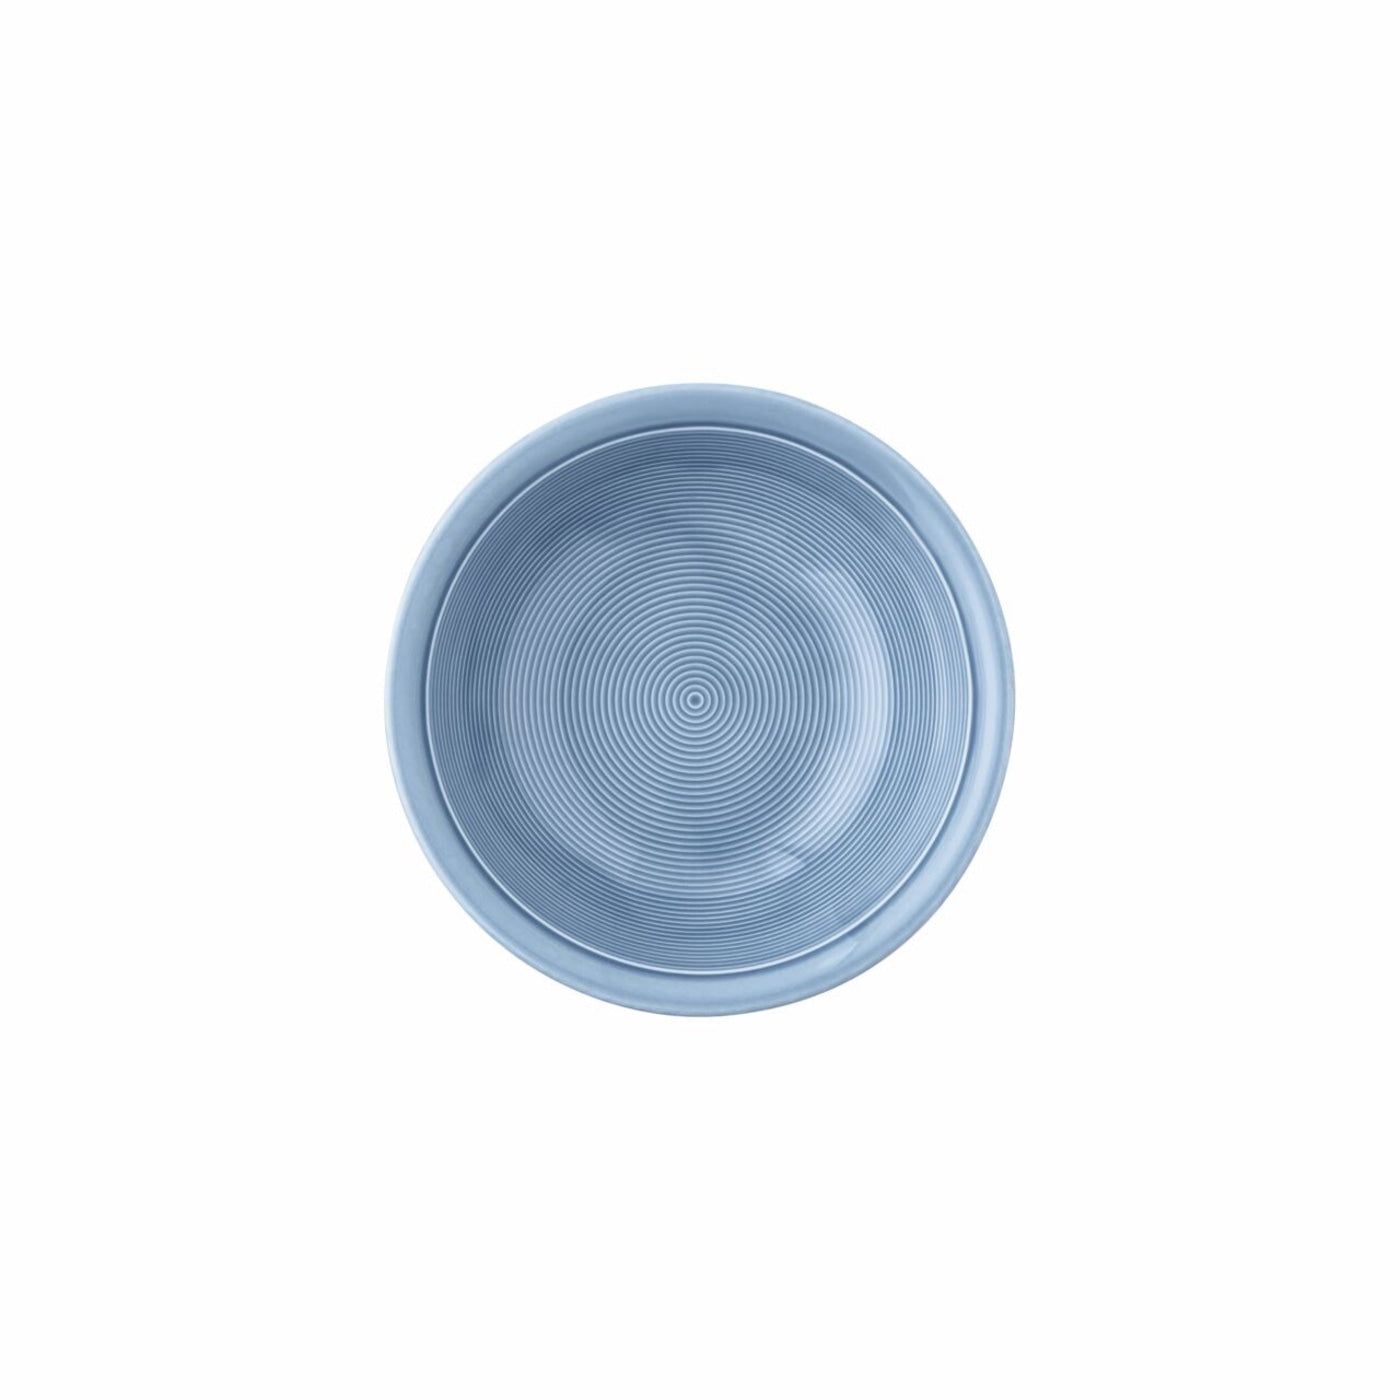 Thomas Trend Colour Arctic Blue Bowl, 17 cm